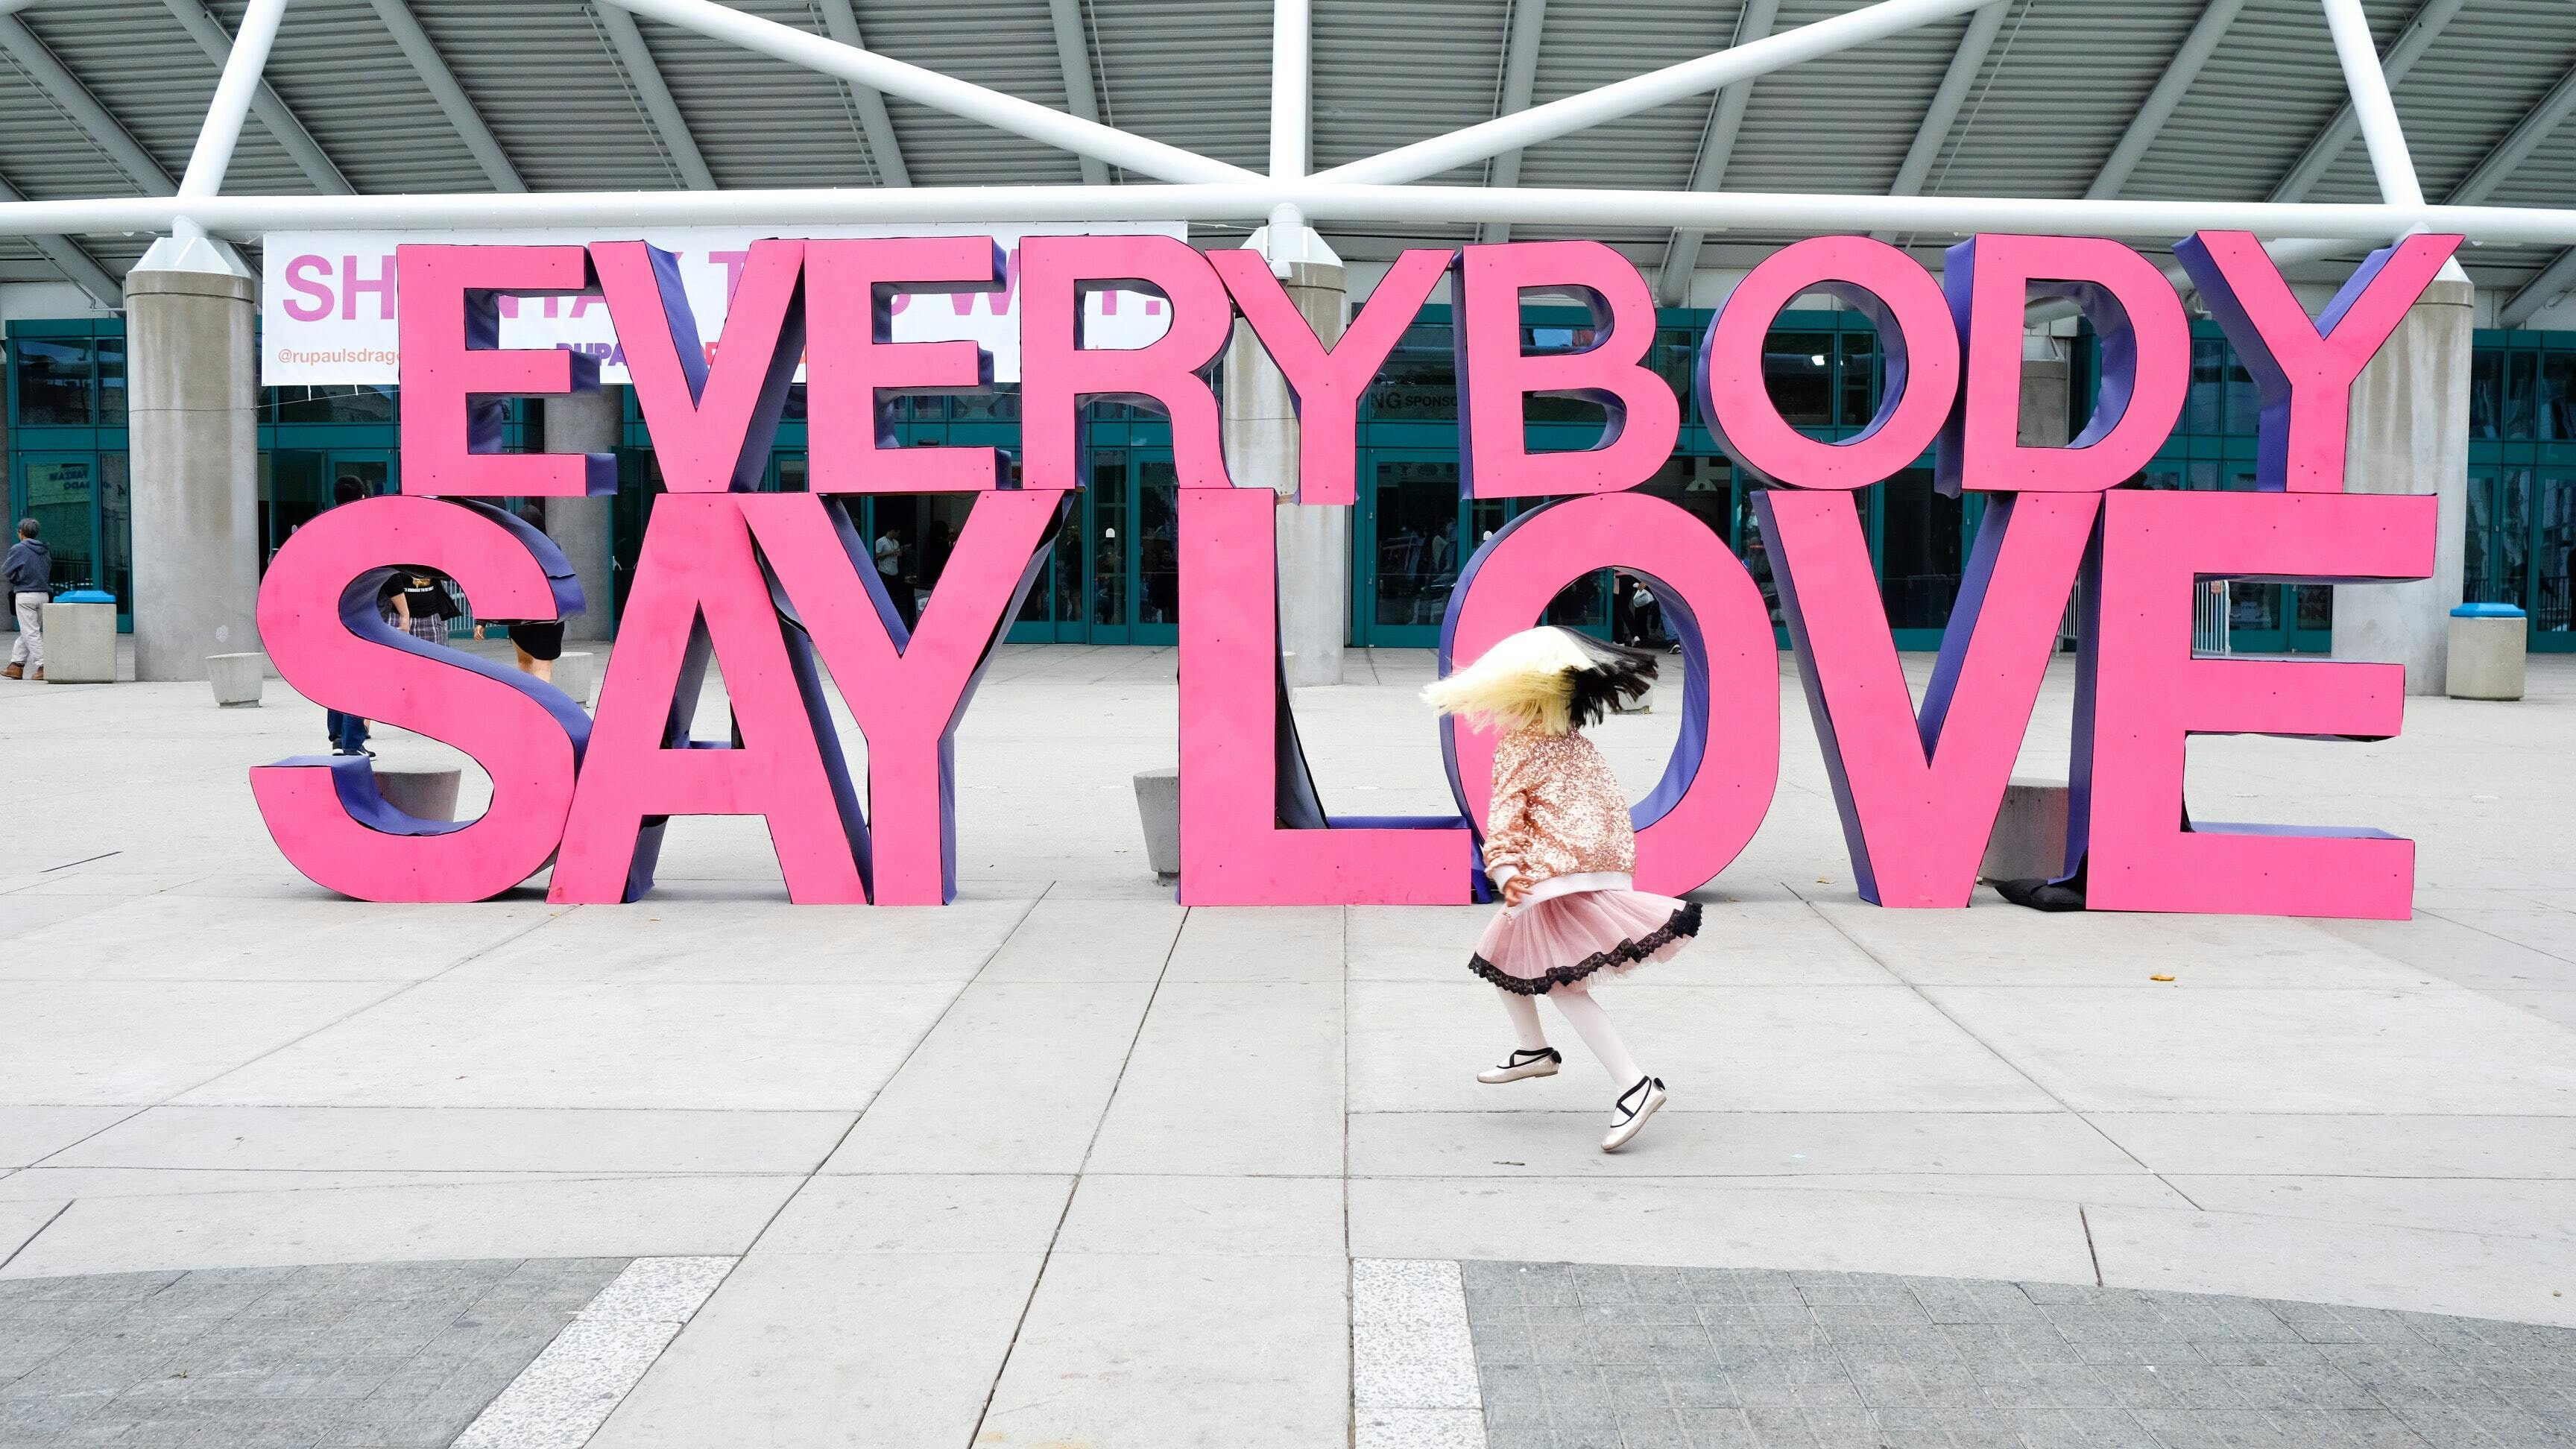 Een grote set roze hoofdletters met het opschrift Everybody say love op een groot plein voor de ingang van een etablissement.